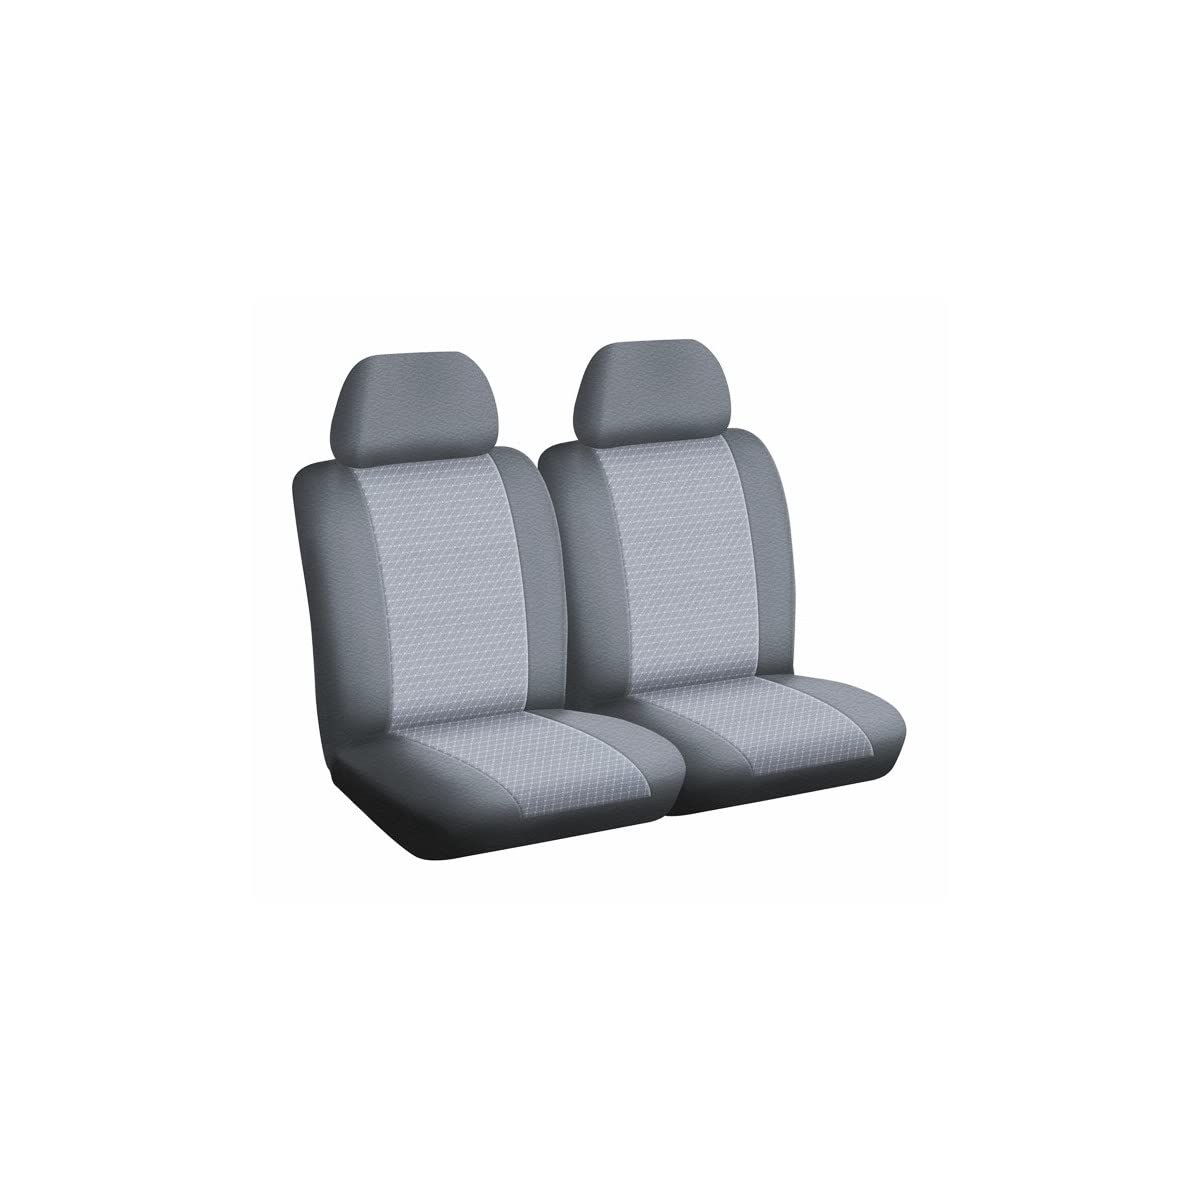 DBS 1011775 Sitzbezug für Auto / Nutzfahrzeug, passgenau, schnelle Montage, Airbag-kompatibel, Isofix von DBS